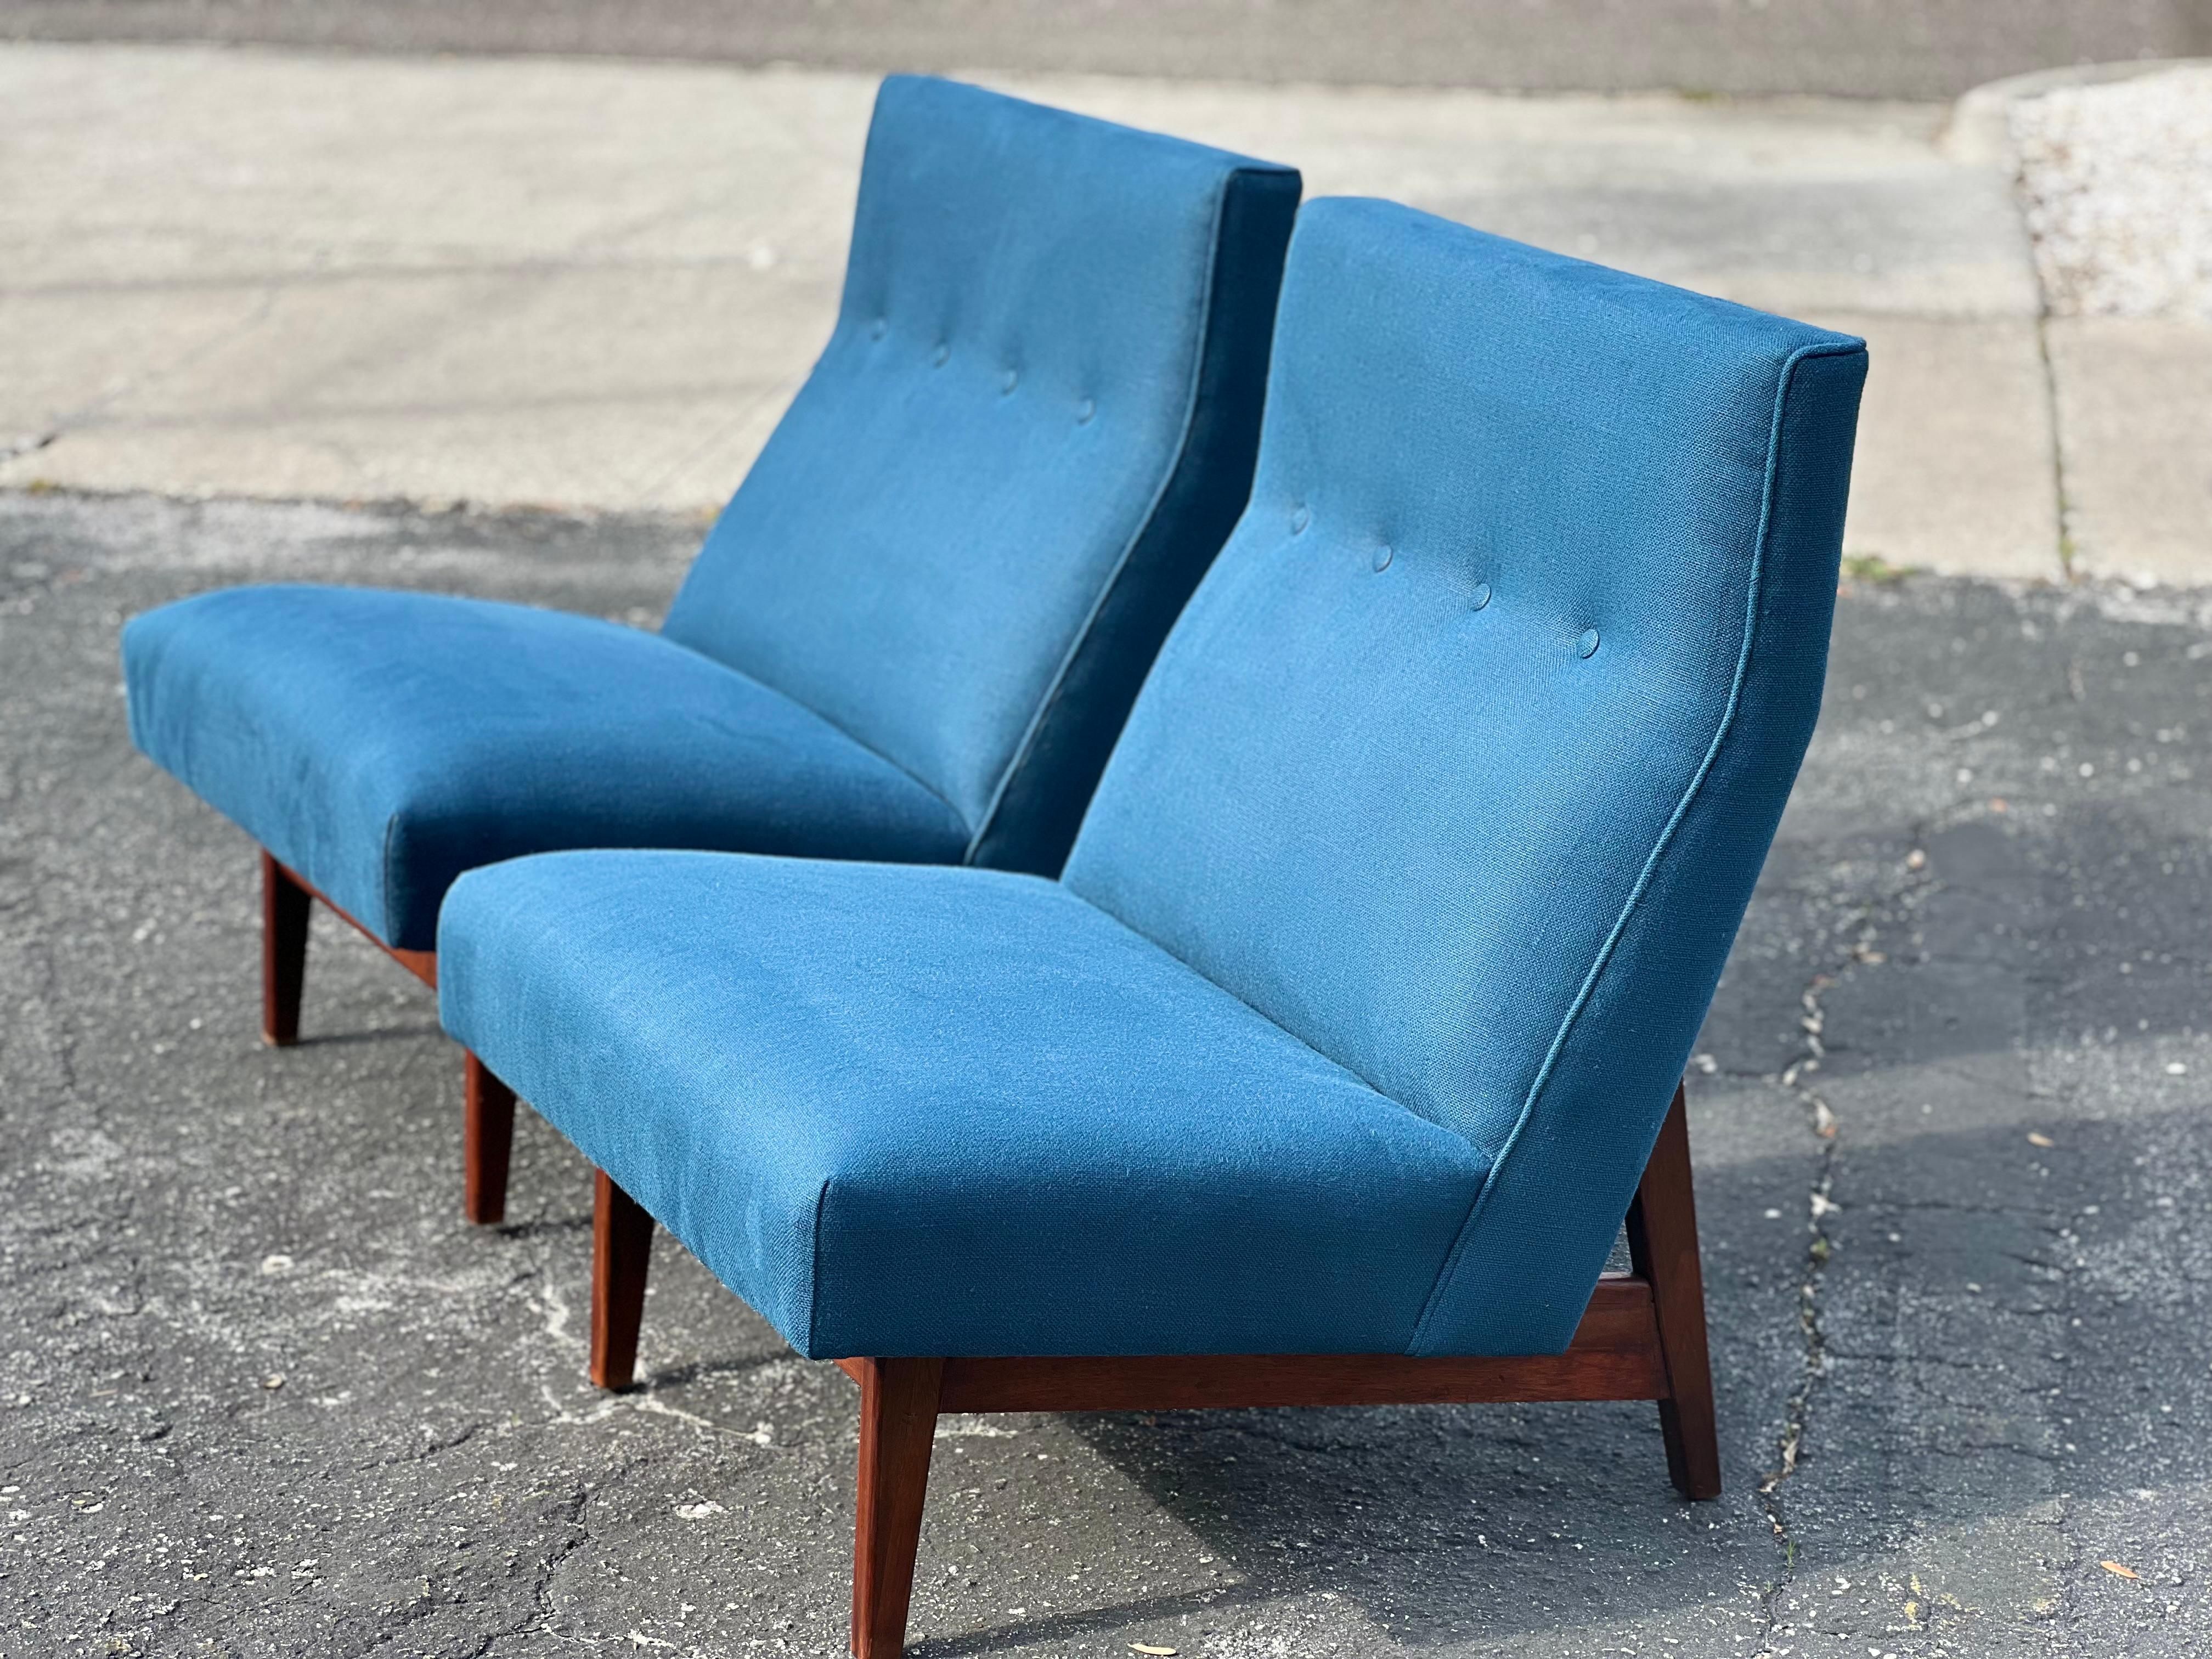 Une paire de chaises classiques sans accoudoirs de Jens Risom - original, production vintage des années 1950. Les cadres en noyer ont une belle patine. Le meuble a été récemment retapissé en lin Brunschwig & Fils, tissé en Belgique. La couleur est